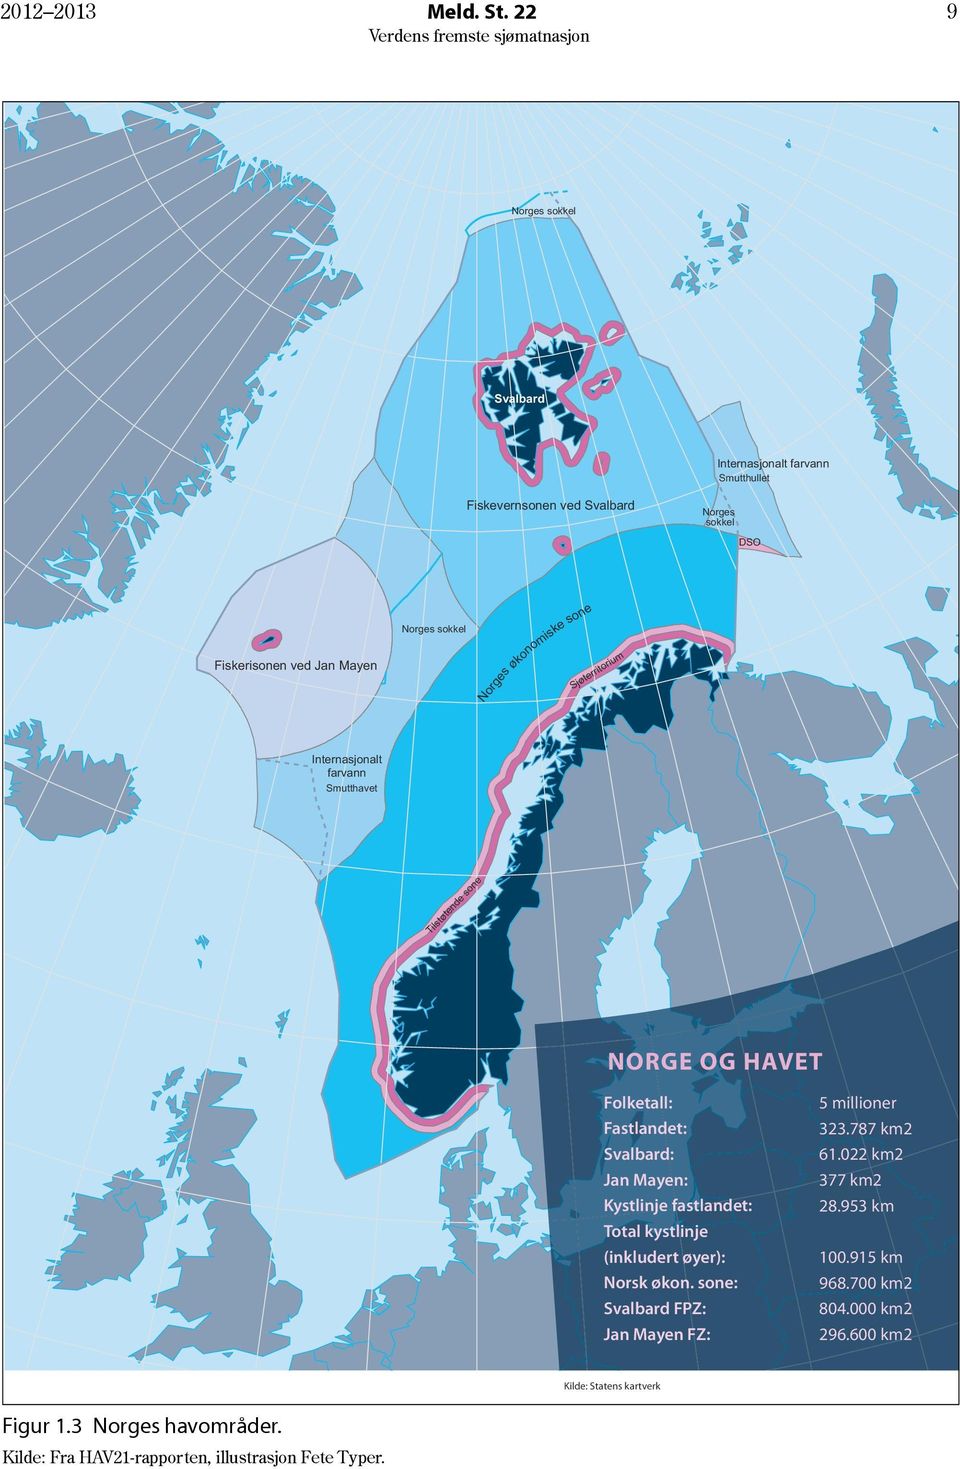 Norges økonomiske sone Sjøterritorium Internasjonalt farvann Smutthavet Tilstøtende sone NORGE OG HAVET Folketall: Fastlandet: Svalbard: Jan Mayen: